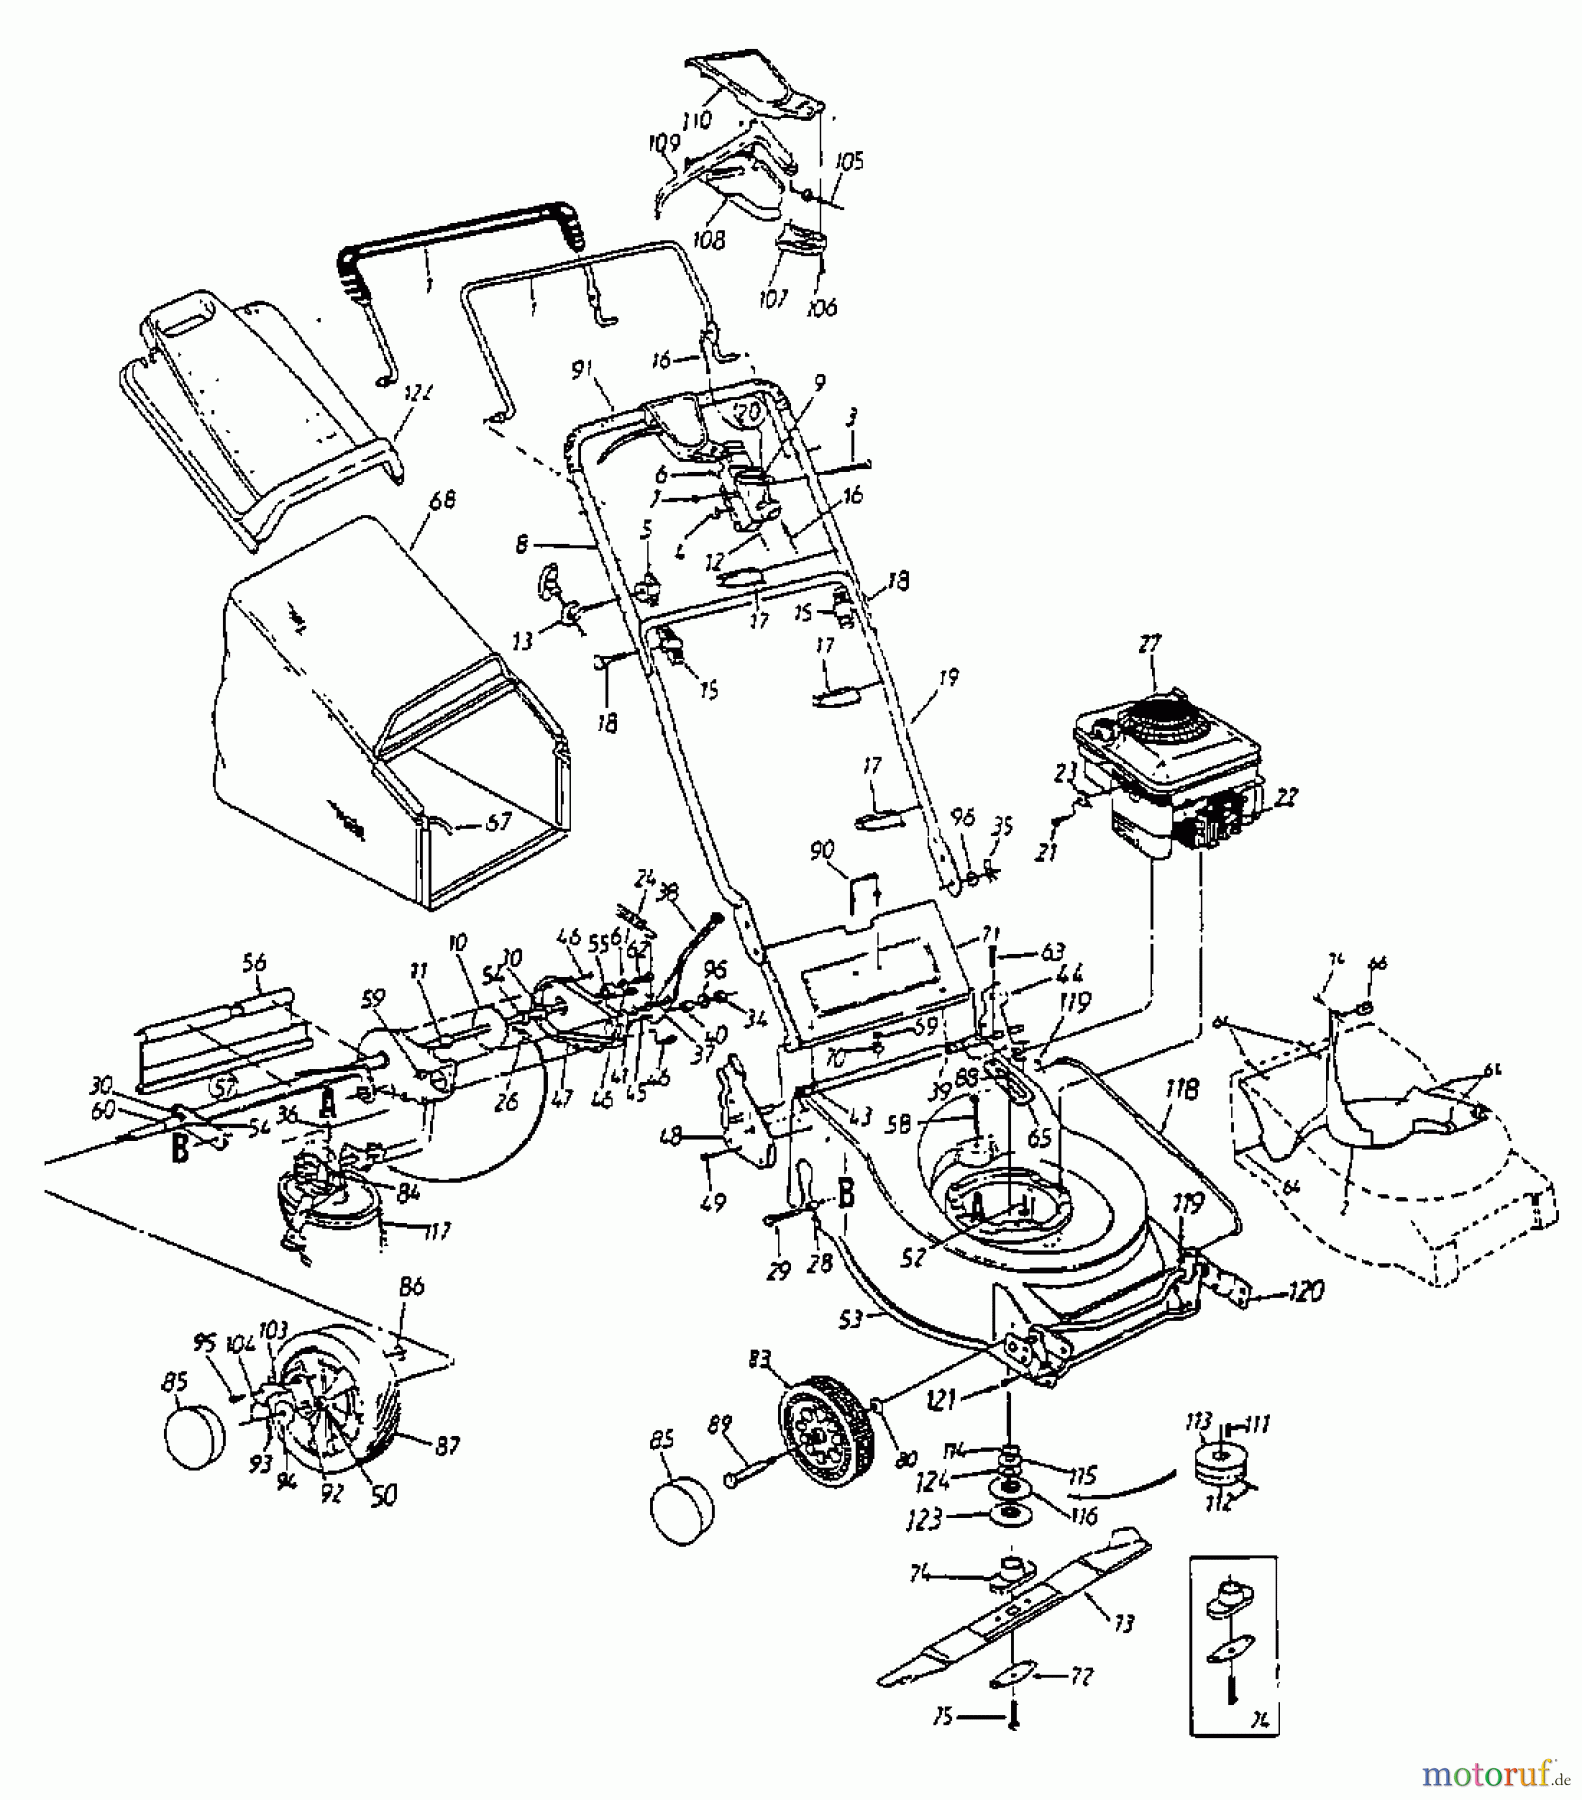  Lawnflite Motormäher mit Antrieb 384 SPE 12AE698E611  (1998) Grundgerät